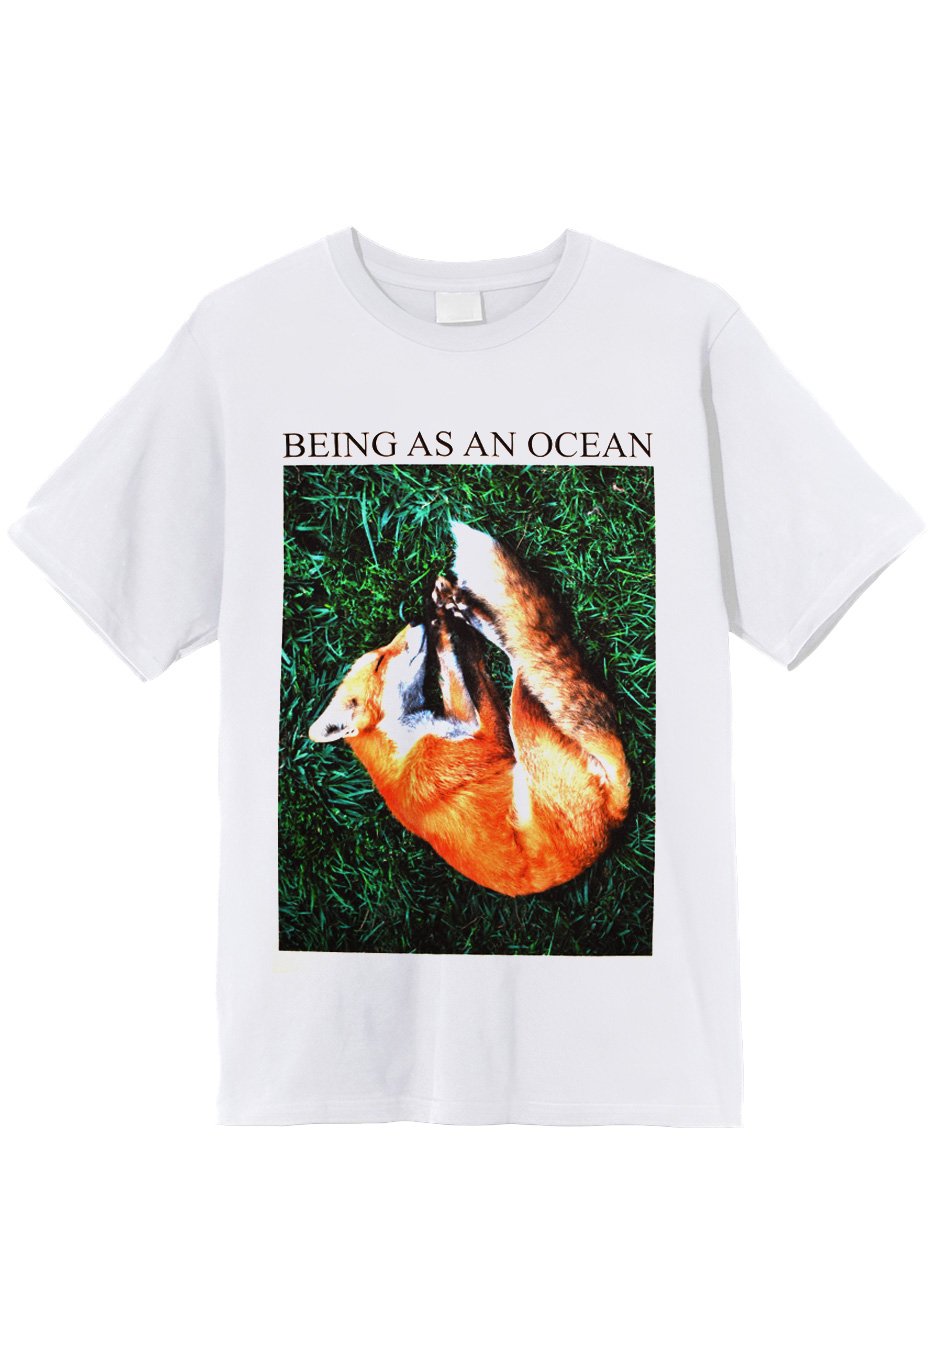 Being As An Ocean - Sleeping Fox White - T-Shirt